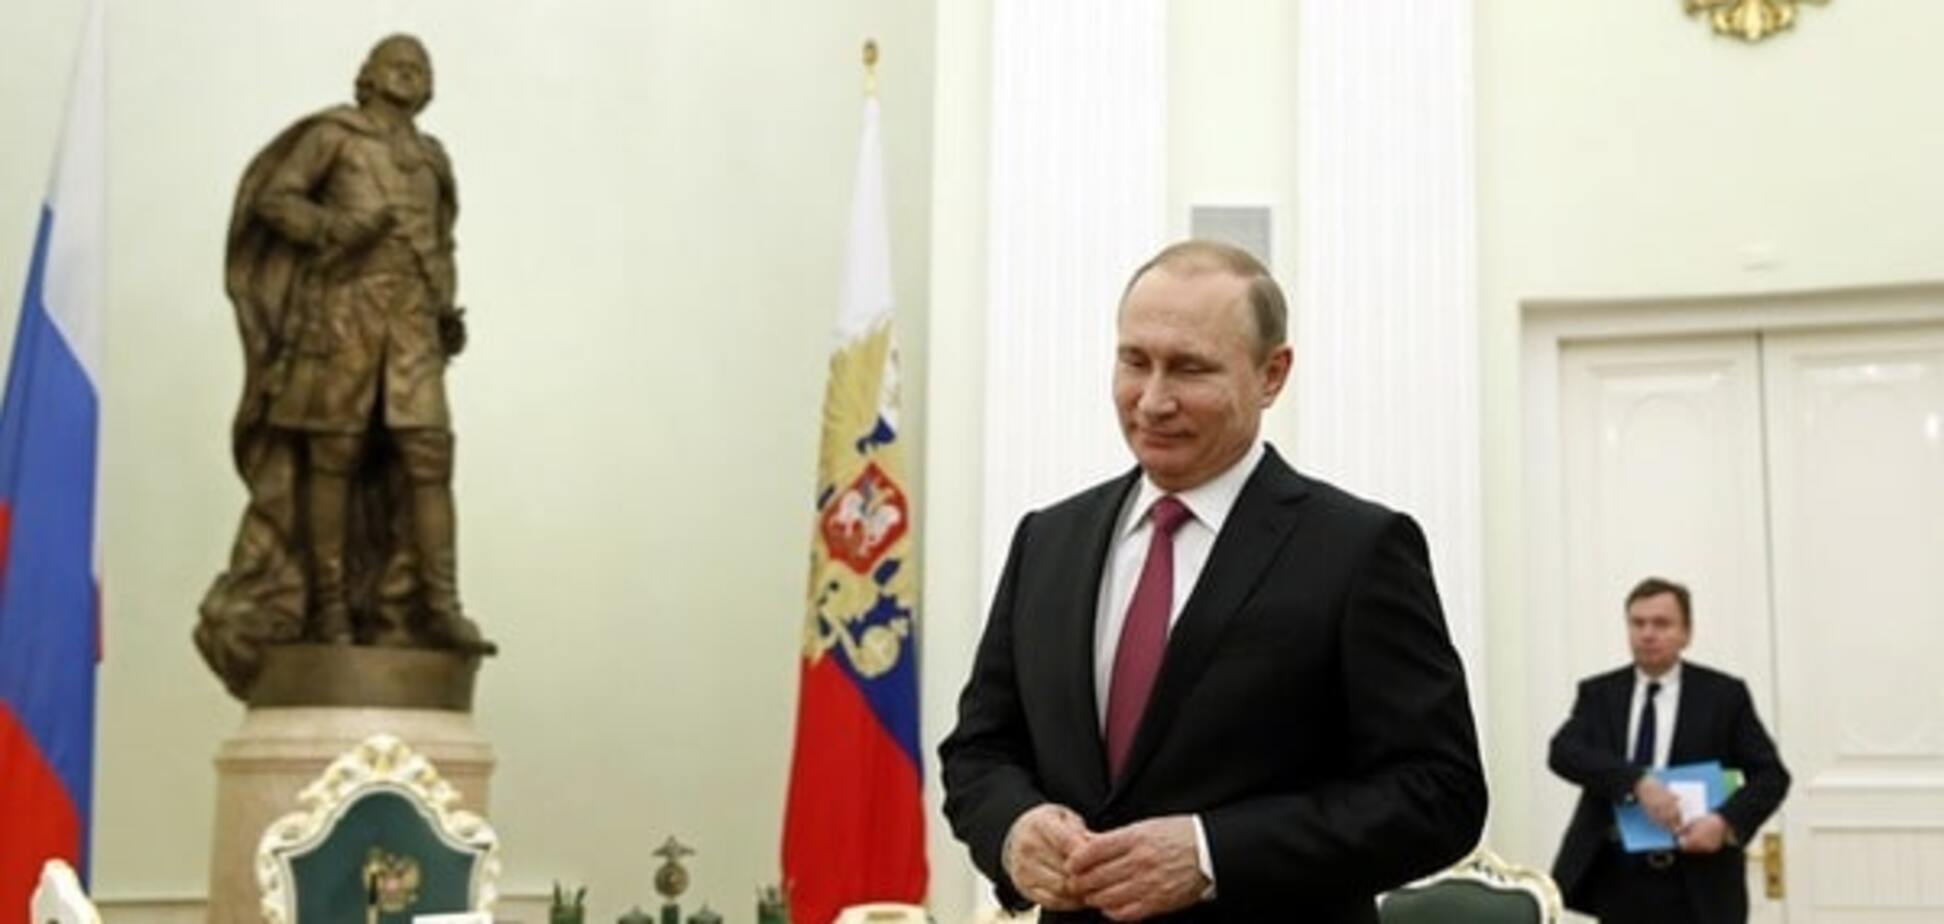 Путин преподнесет Украине 'мирного коня' в обмен на снятие санкций - Муждабаев